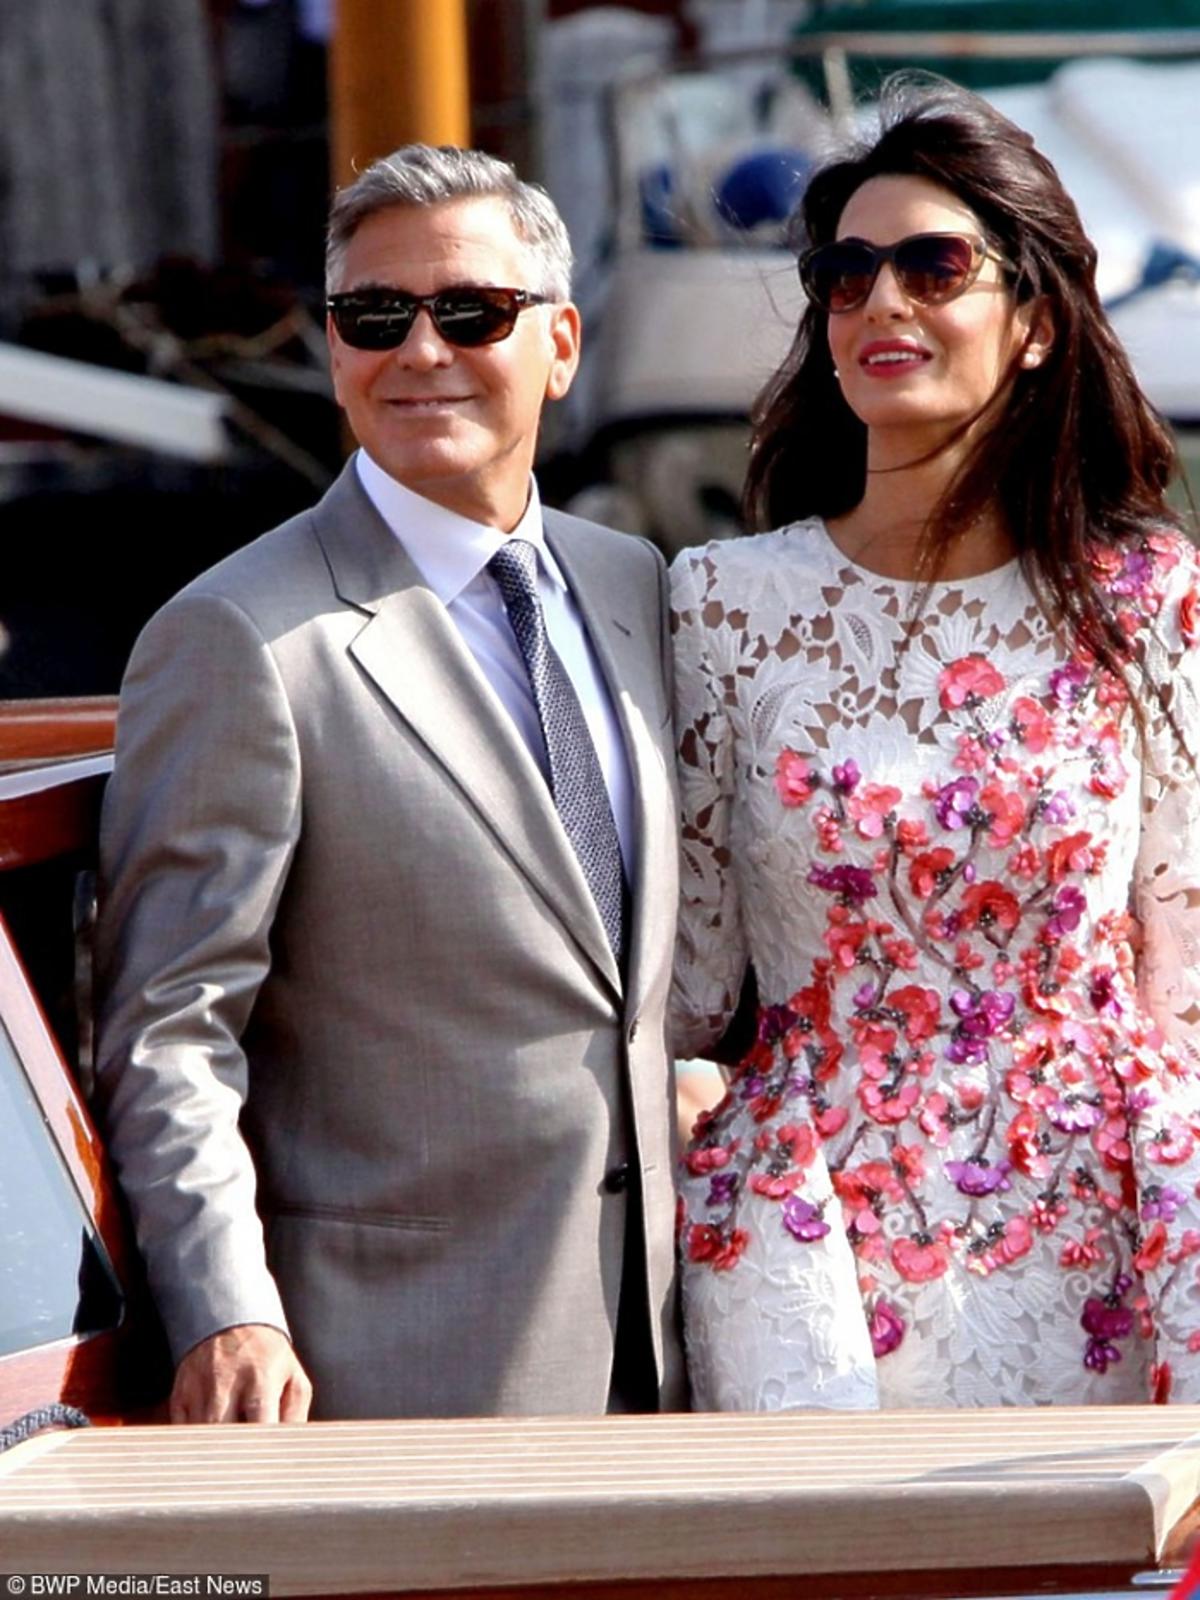 George Clooney w eleganckim grafitowym garniturze, Amal Clooney w białej koronkowej sukni z kolorowymi motywami kwiatowymi